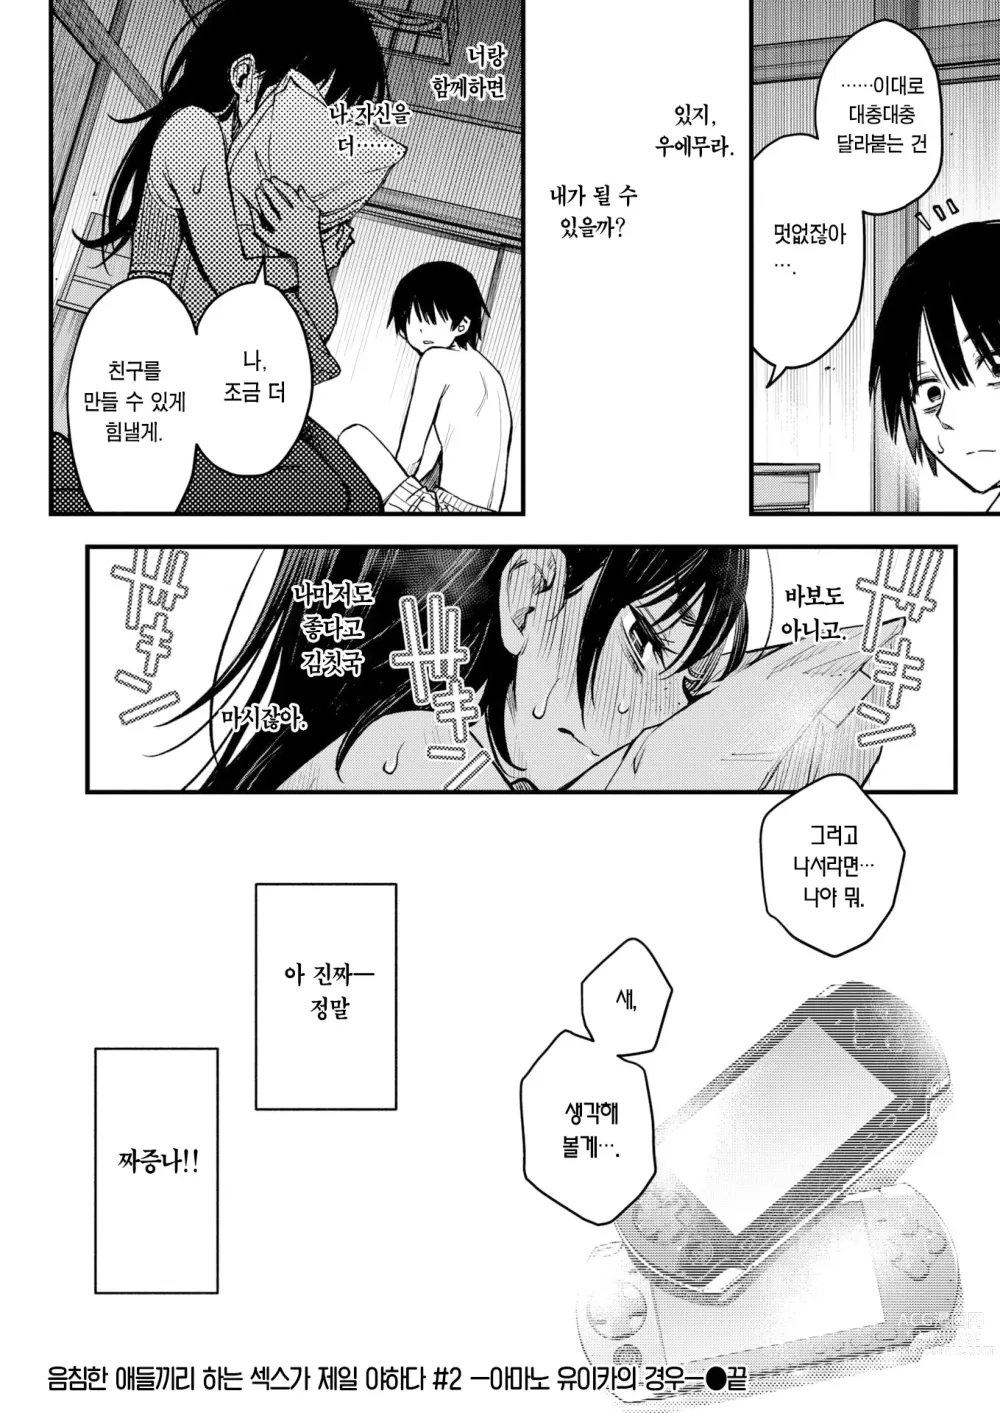 Page 23 of manga 음침한 애들끼리 하는 섹스가 제일 야하다 #2 ―아마노 유이카의 경우―